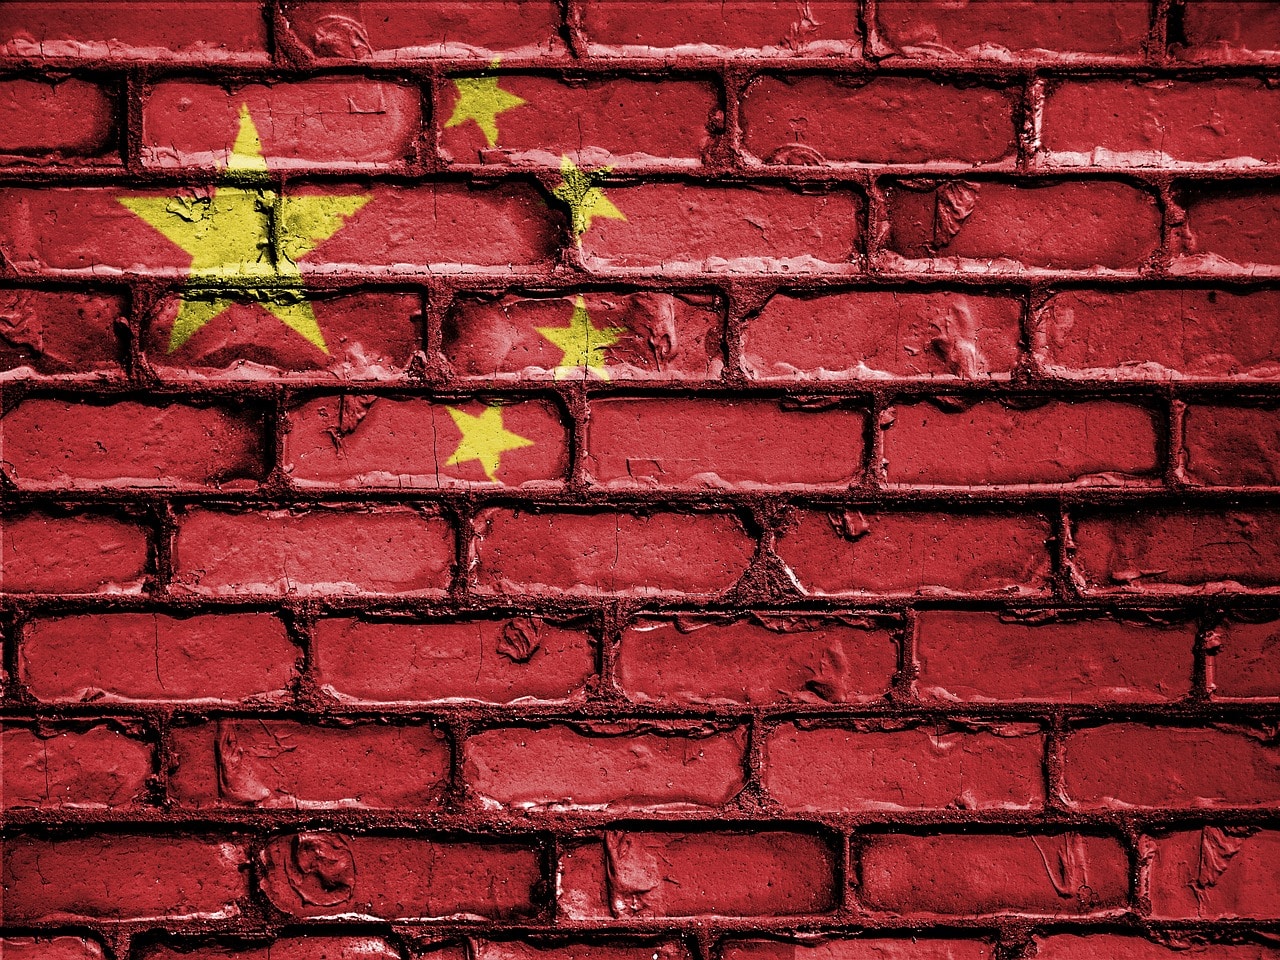 La Cina pone un freno alla “disinformazione” degli influencer thumbnail